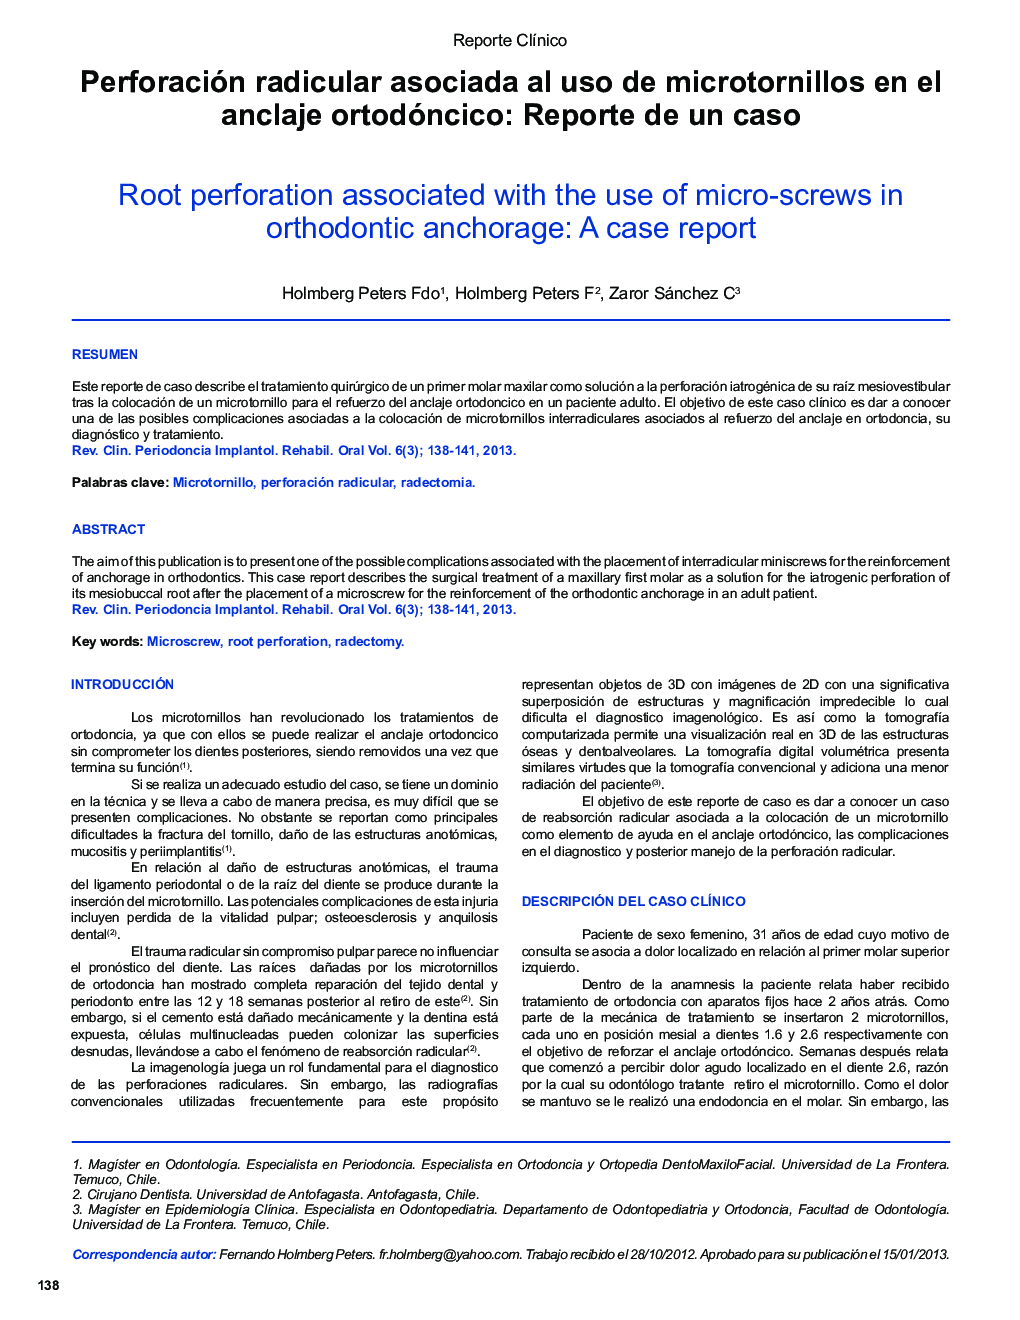 Perforación radicular asociada al uso de microtornillos en el anclaje ortodóncico: Reporte de un caso